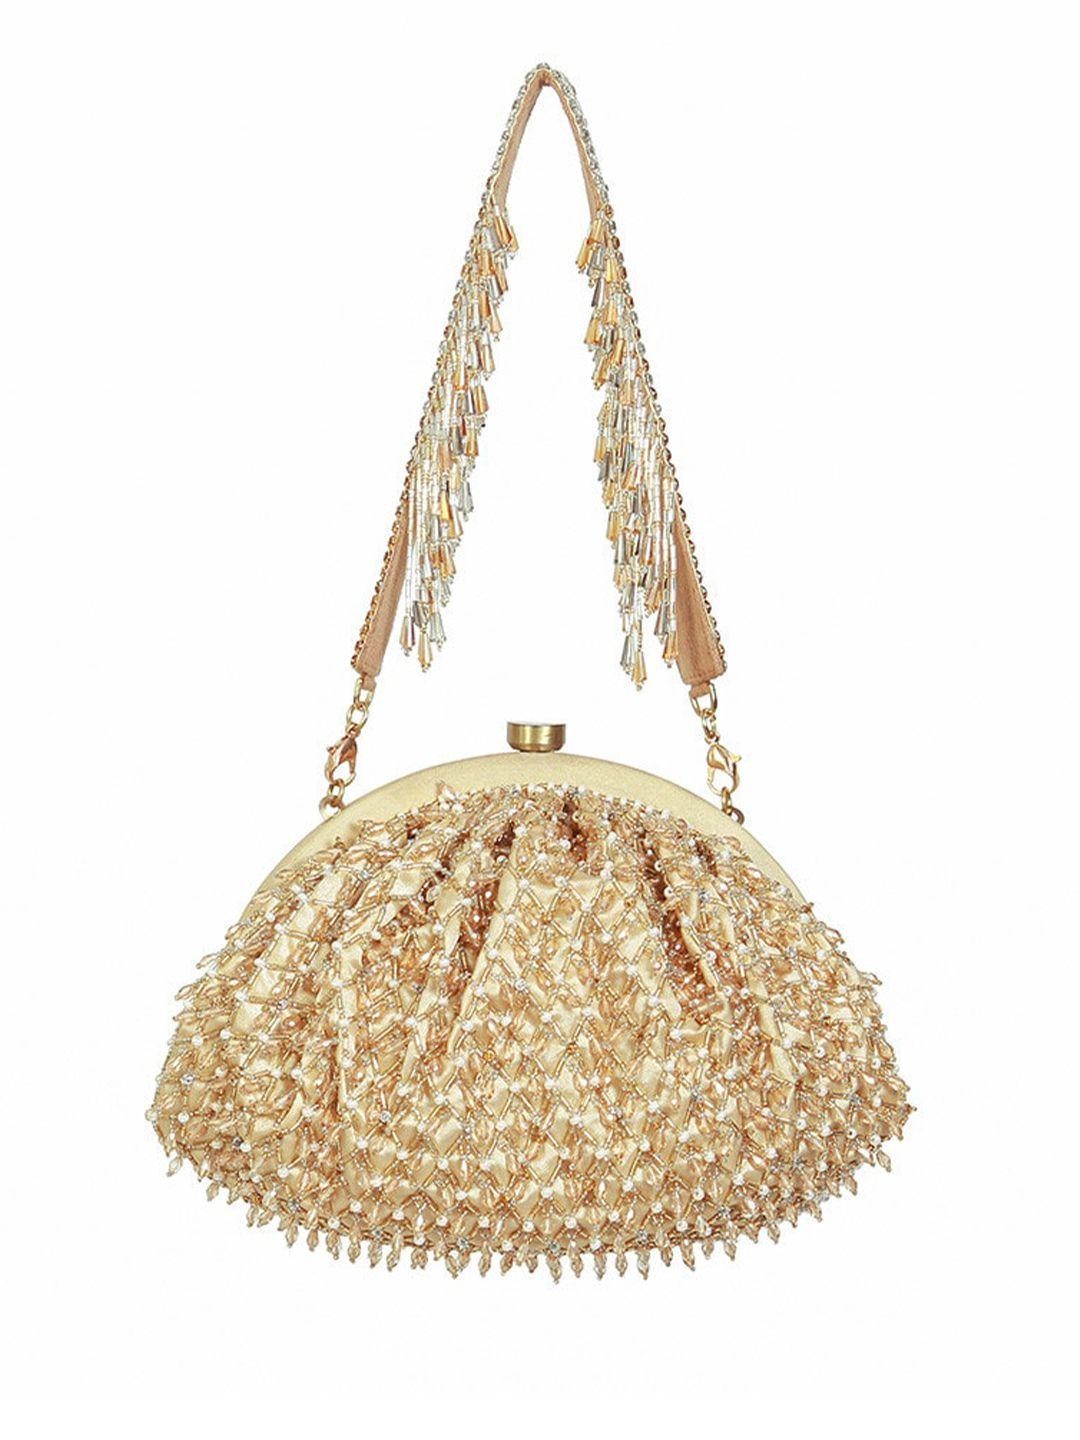 lovetobag embellished purse clutch